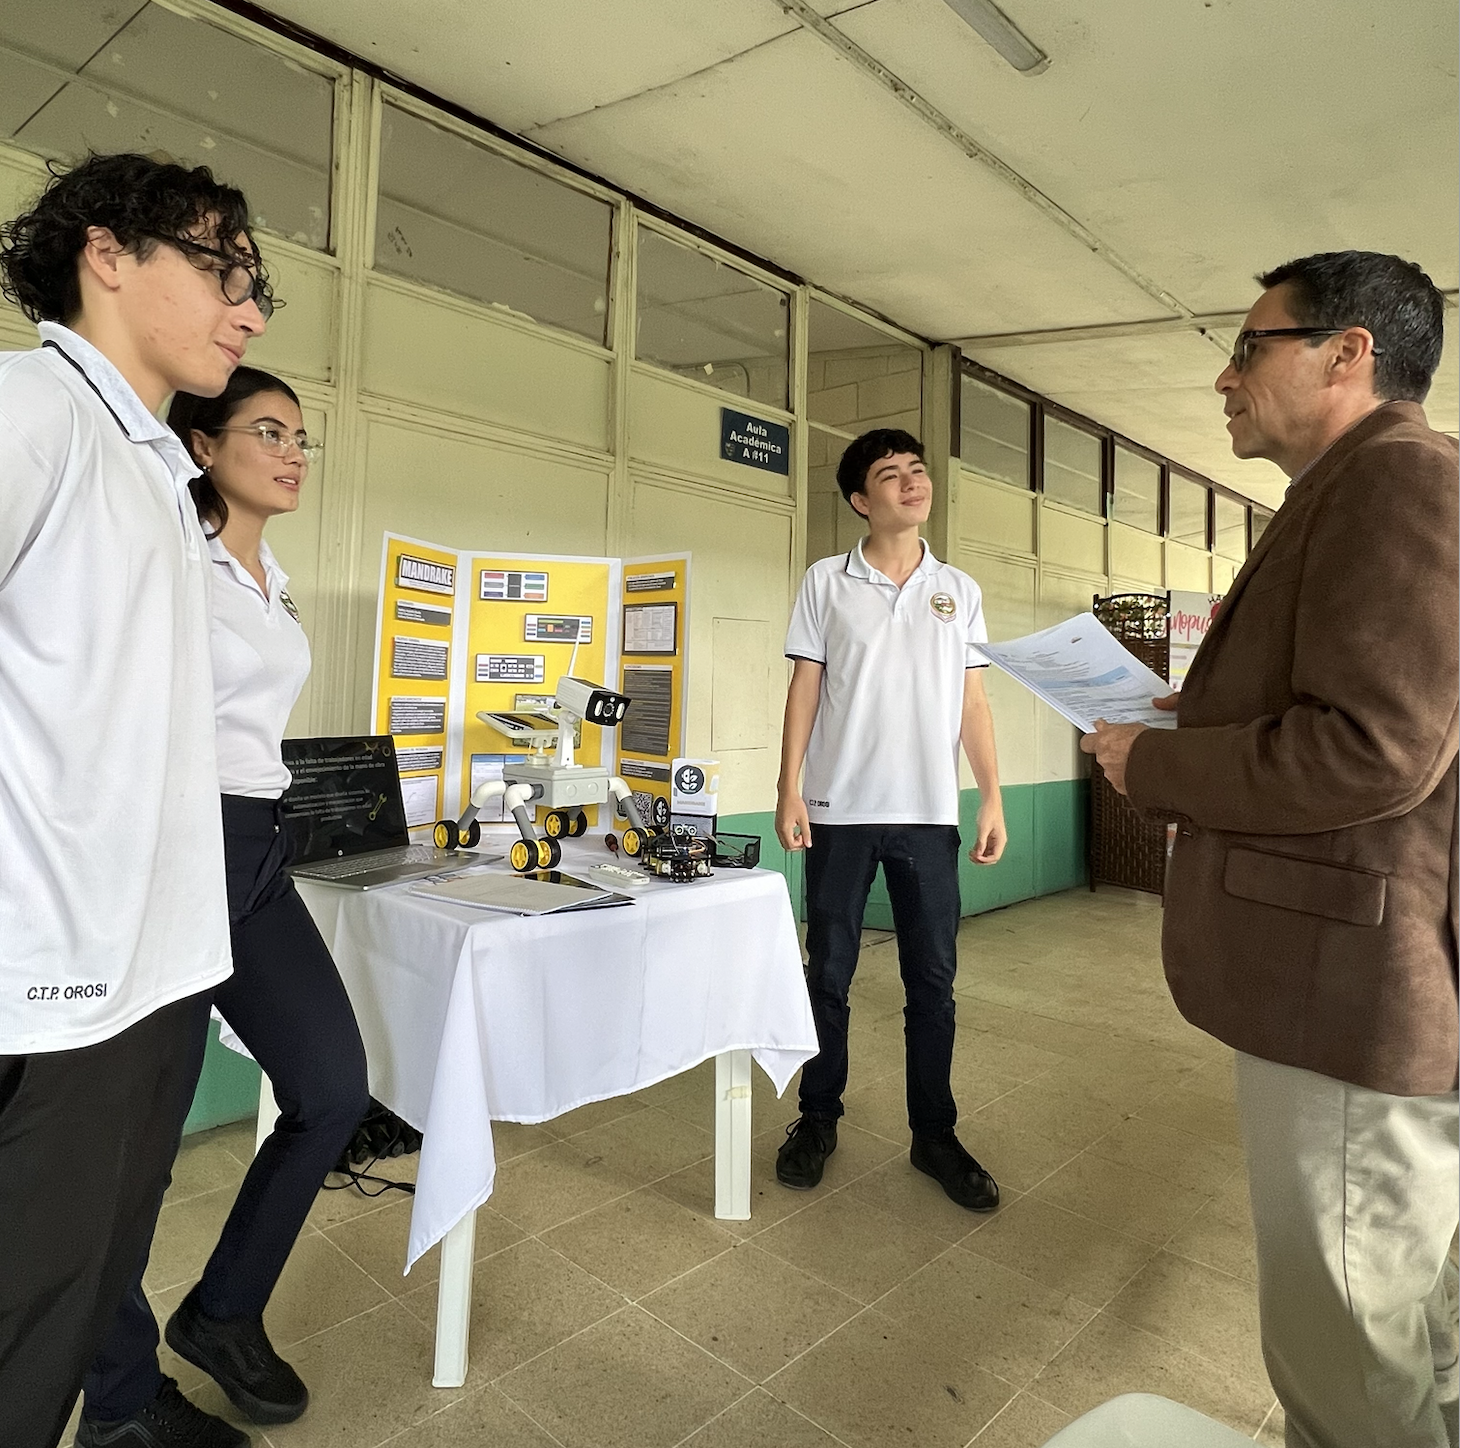 Exposición a don luis Jimenez de estudiantes como parte de expo técnicas 